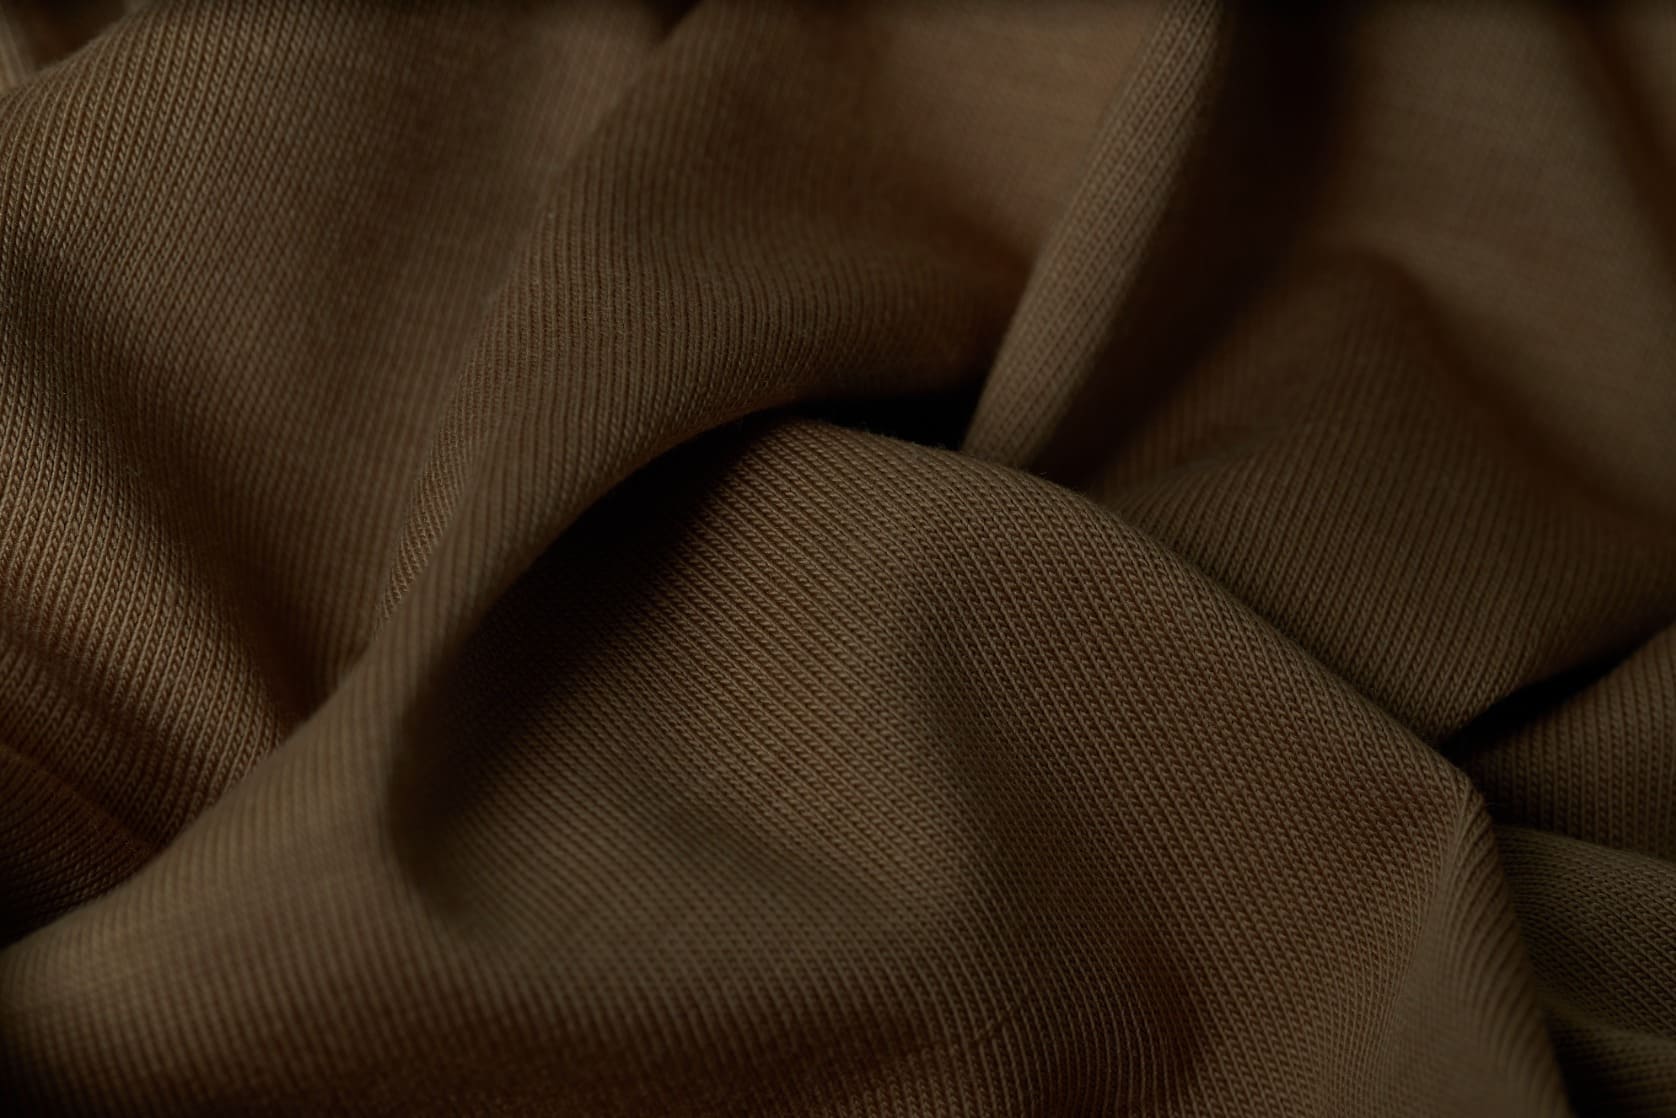 đặc điểm của vải supima cotton